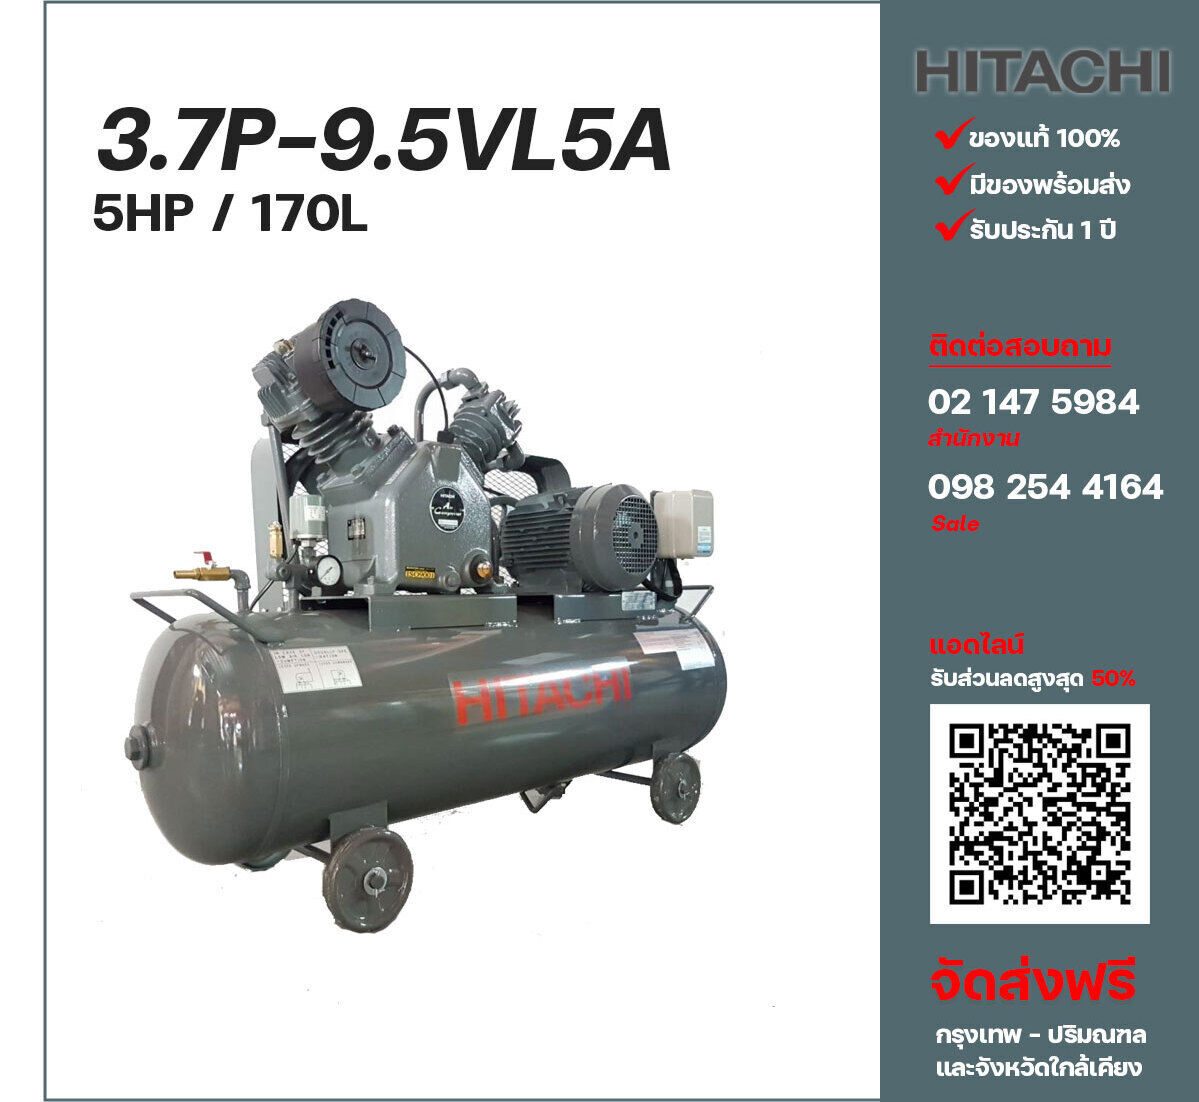 ปั๊มลมฮิตาชิ HITACHI รุ่นใช้น้ำมัน 3.7P-9.5VL5A380V ปั๊มลมลูกสูบ ขนาด 2 สูบ 5 แรงม้า 170 ลิตร Hitachi พร้อมมอเตอร์ Hitachi ไฟ 380V ส่งฟรี กรุงเทพฯ-ปริมณฑล รับประกัน 1 ปี